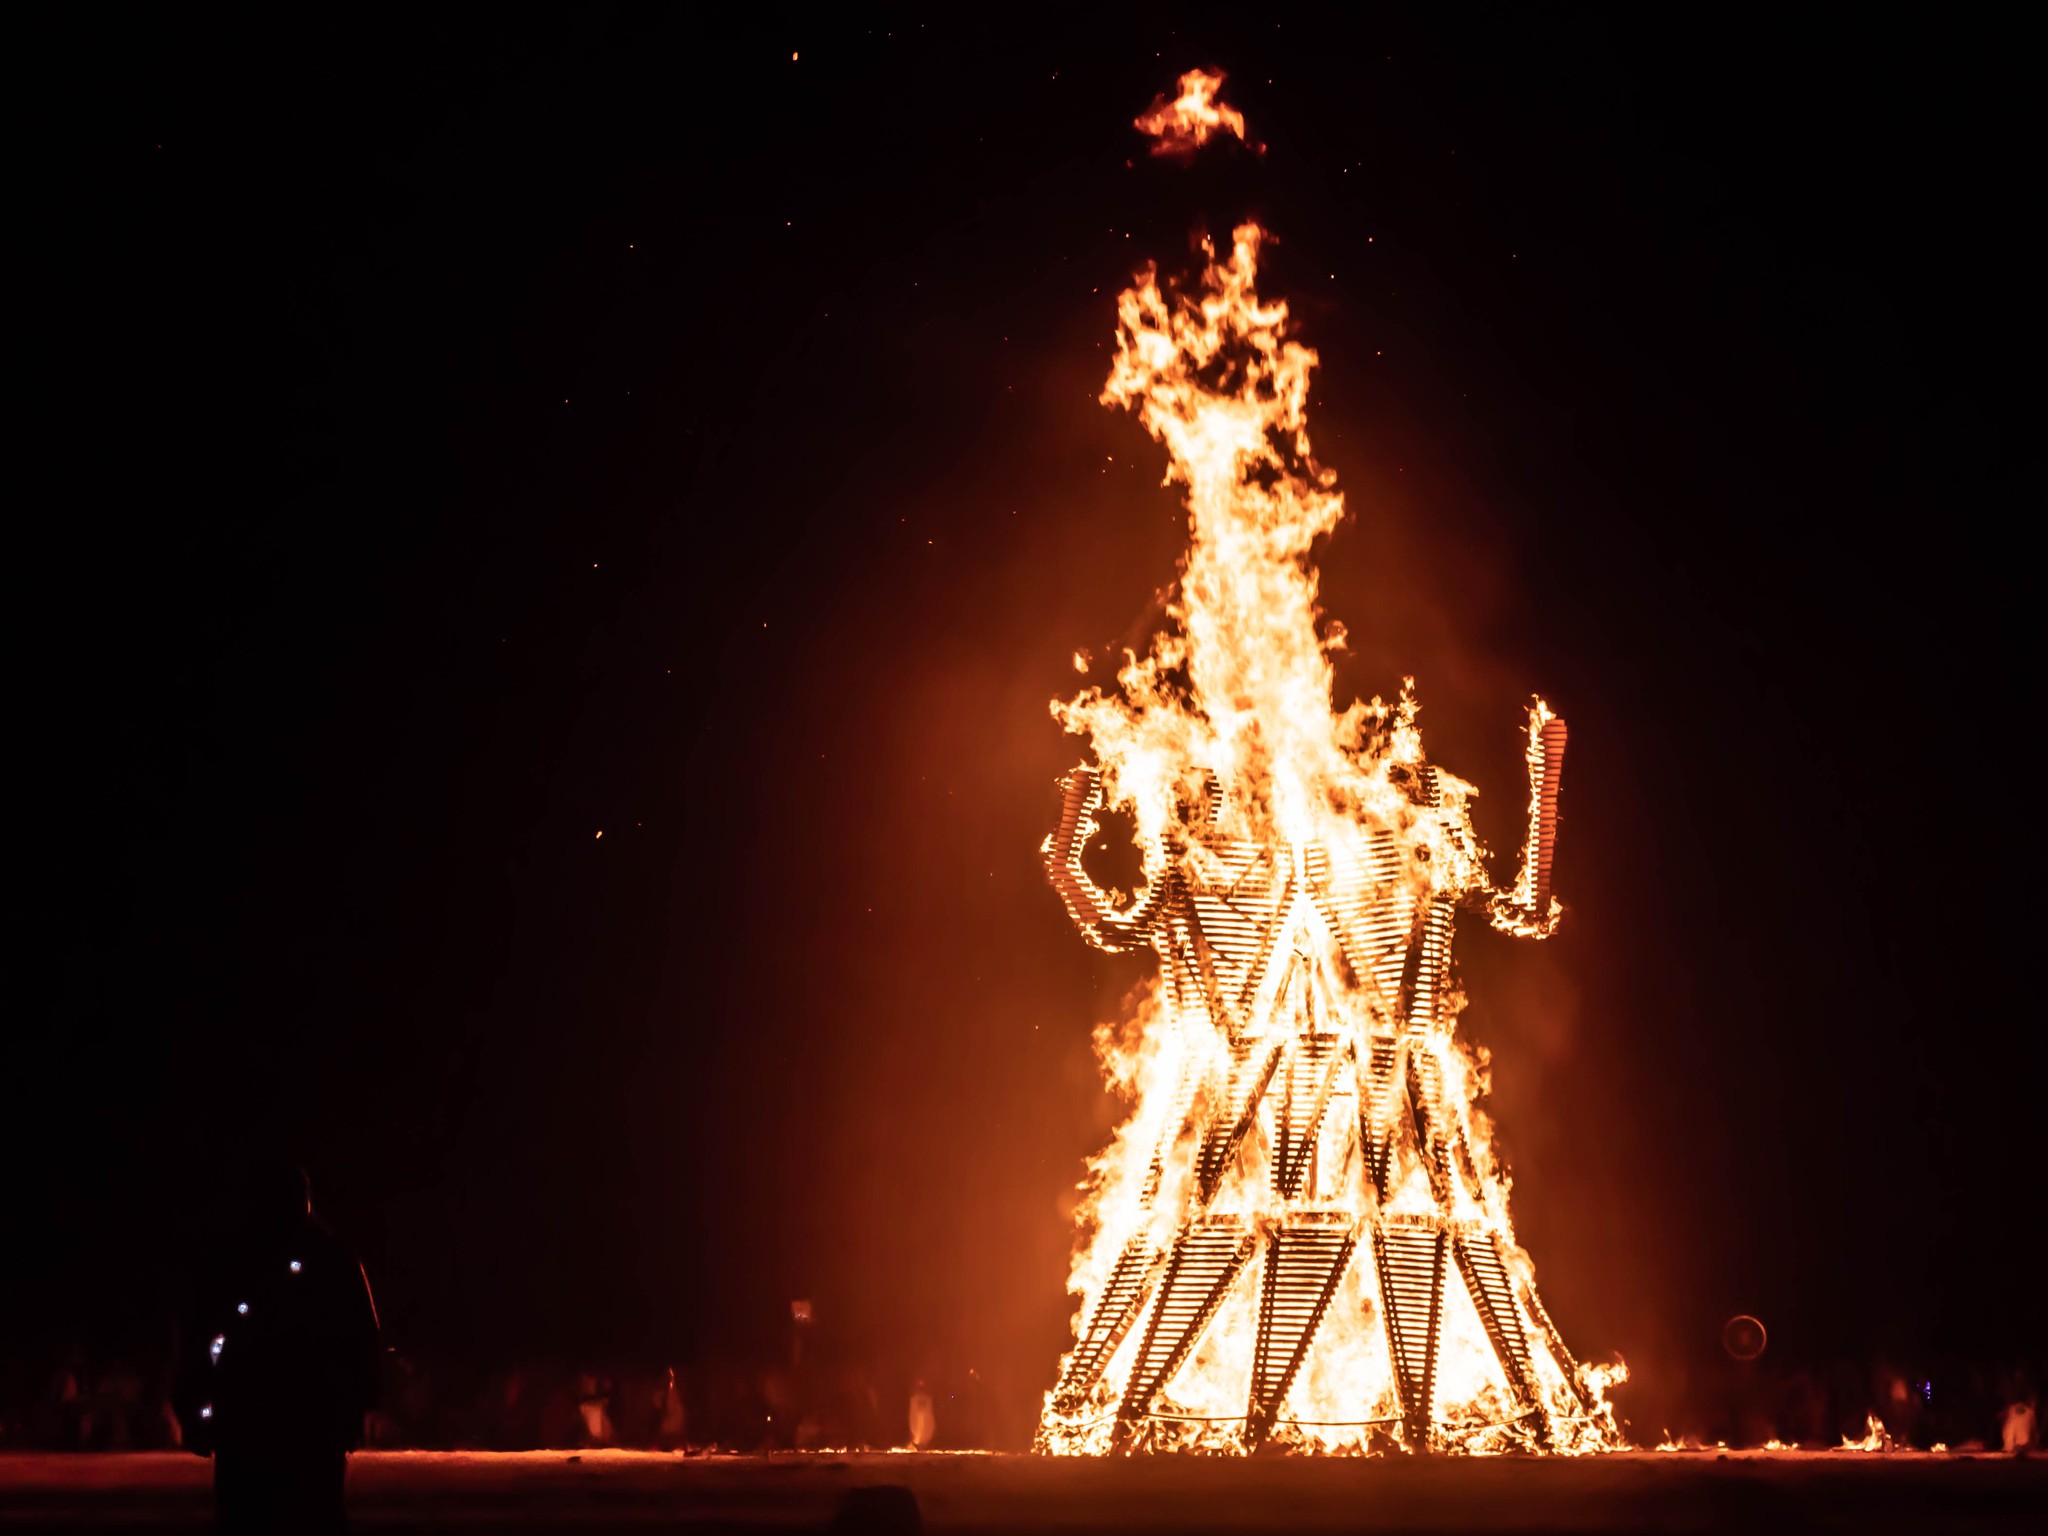 Le rituel de combustion est un spectacle à voir | Crédits photo : David Gwynne-Evans